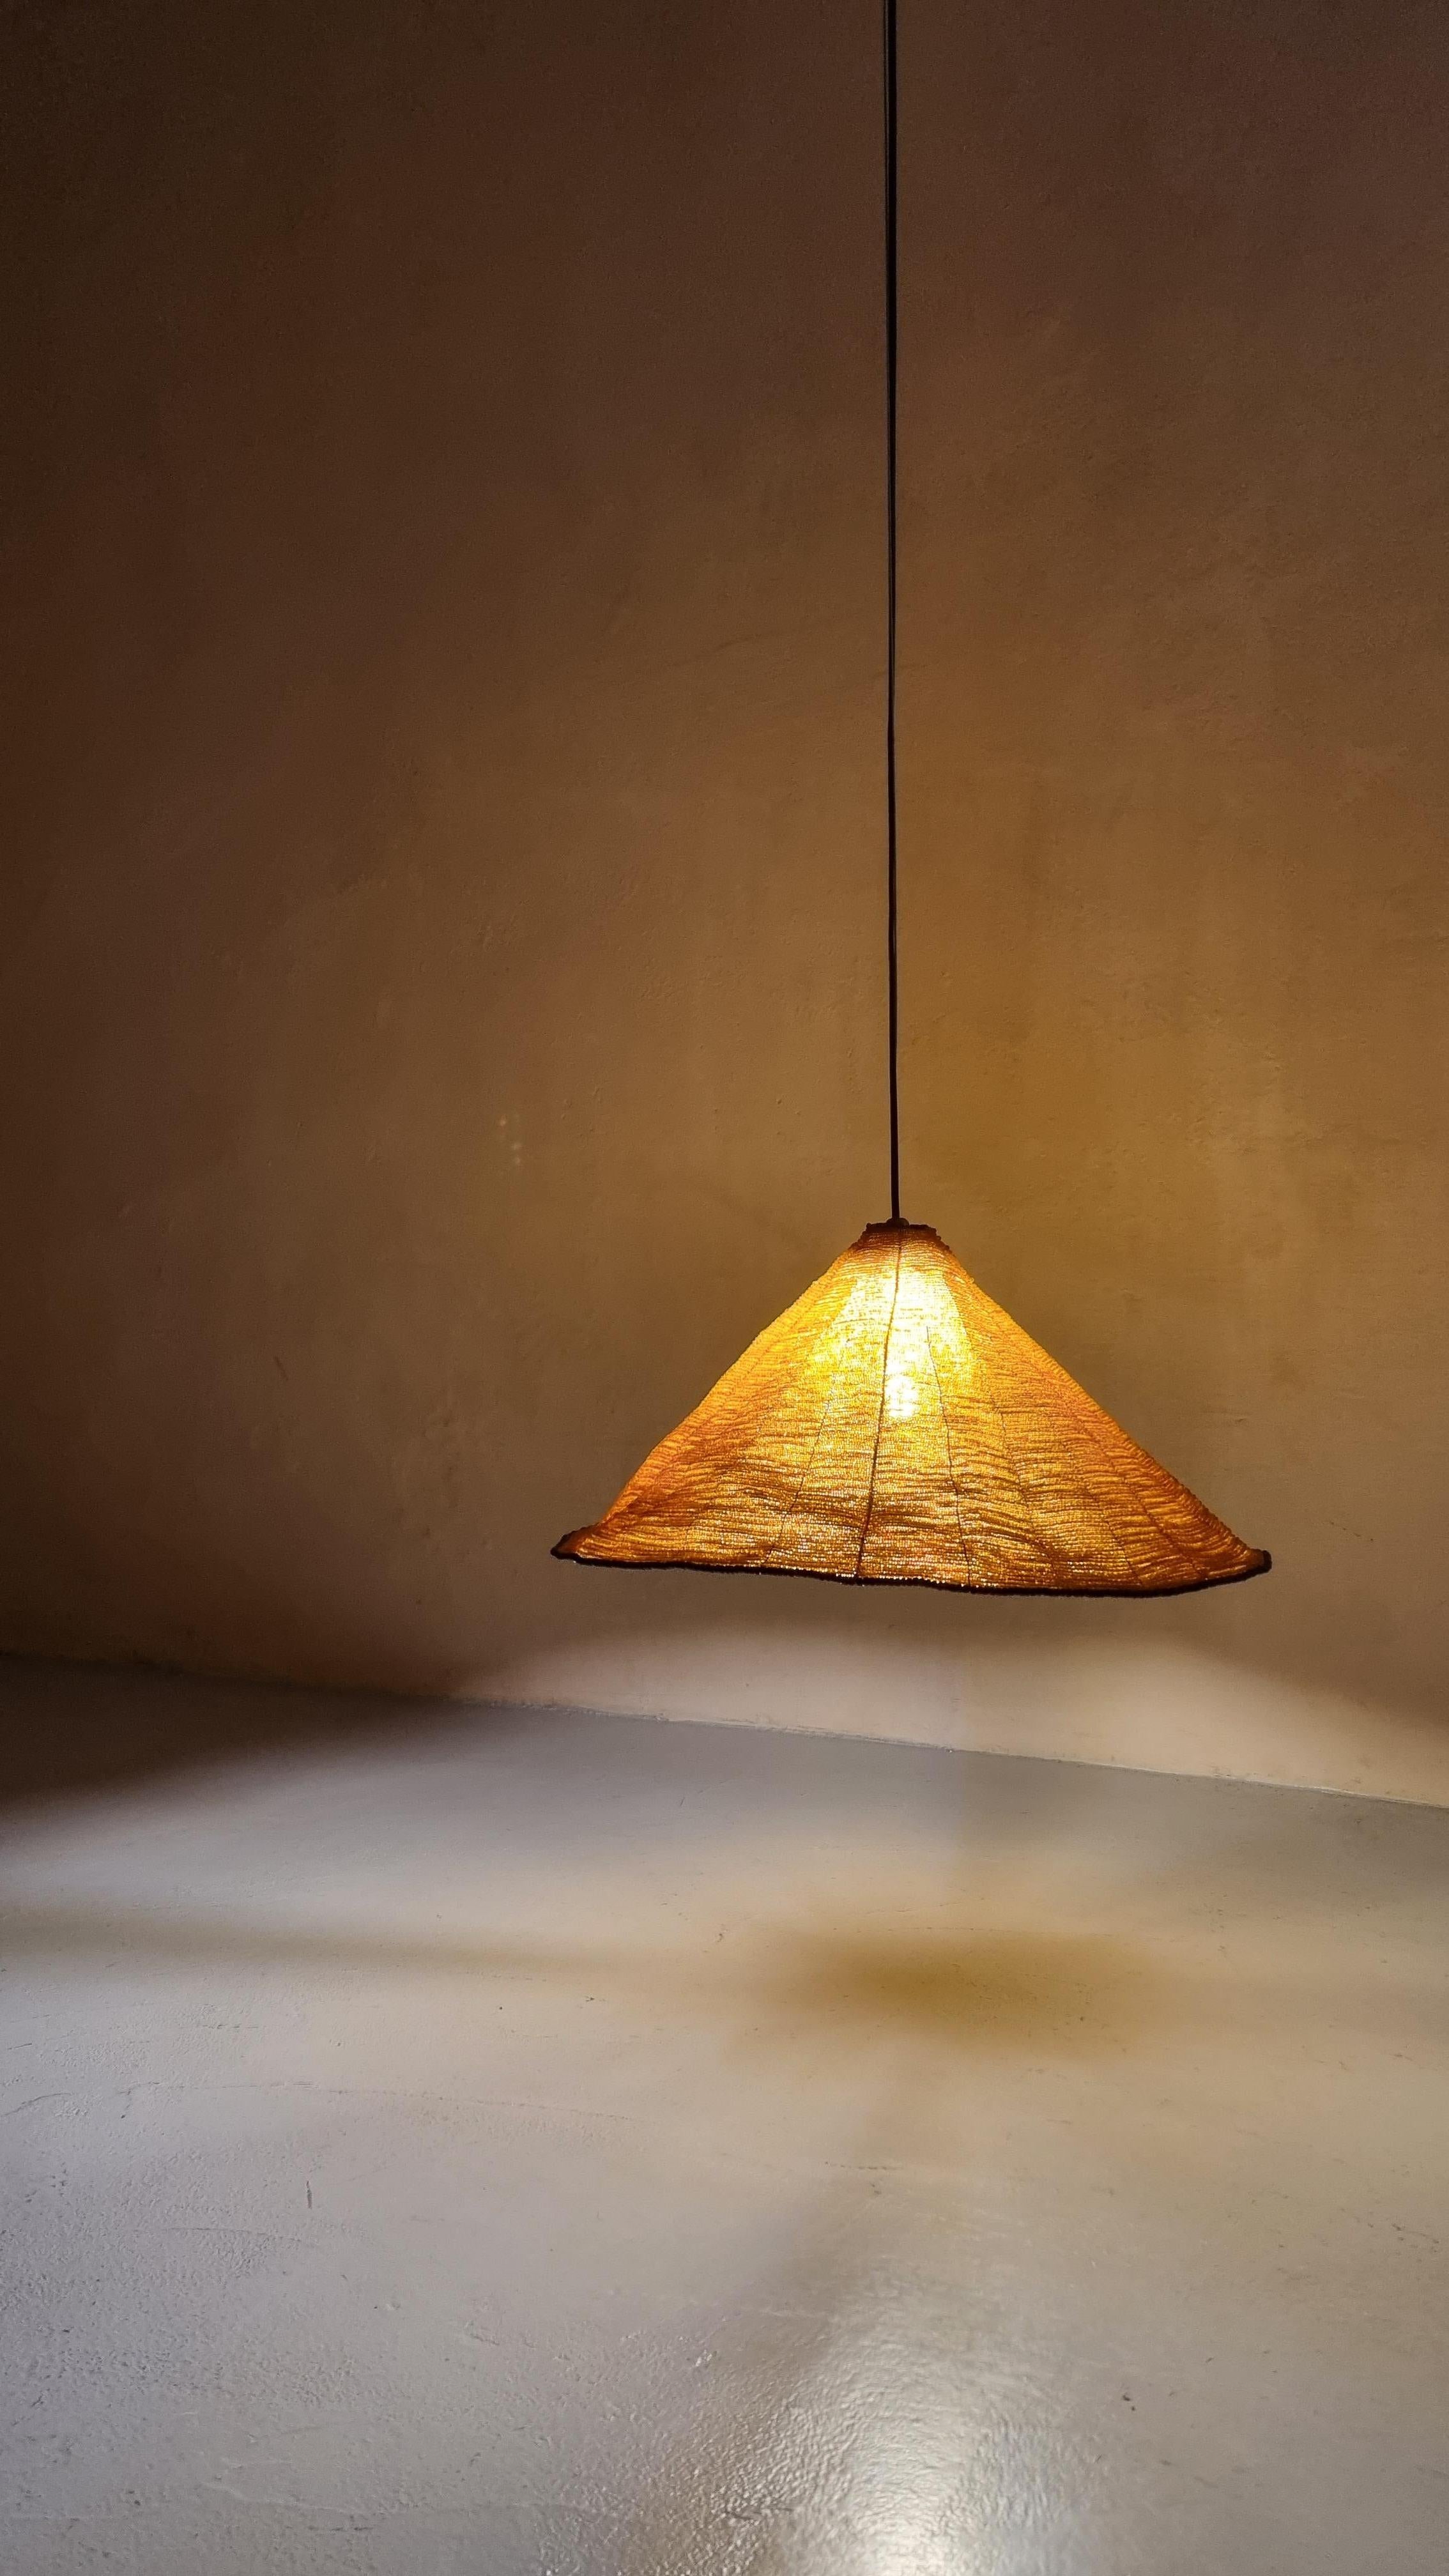 Plafond Sarasar  lampe conçue par Roberto Pamio et Renato Toso pour Leucos en 1975.
 Diffuseur en perles de verre colorées, ambre et bord noir.
 Ce plafond rare  la lampe n'a été produite que pendant quelques années en raison des longs délais de